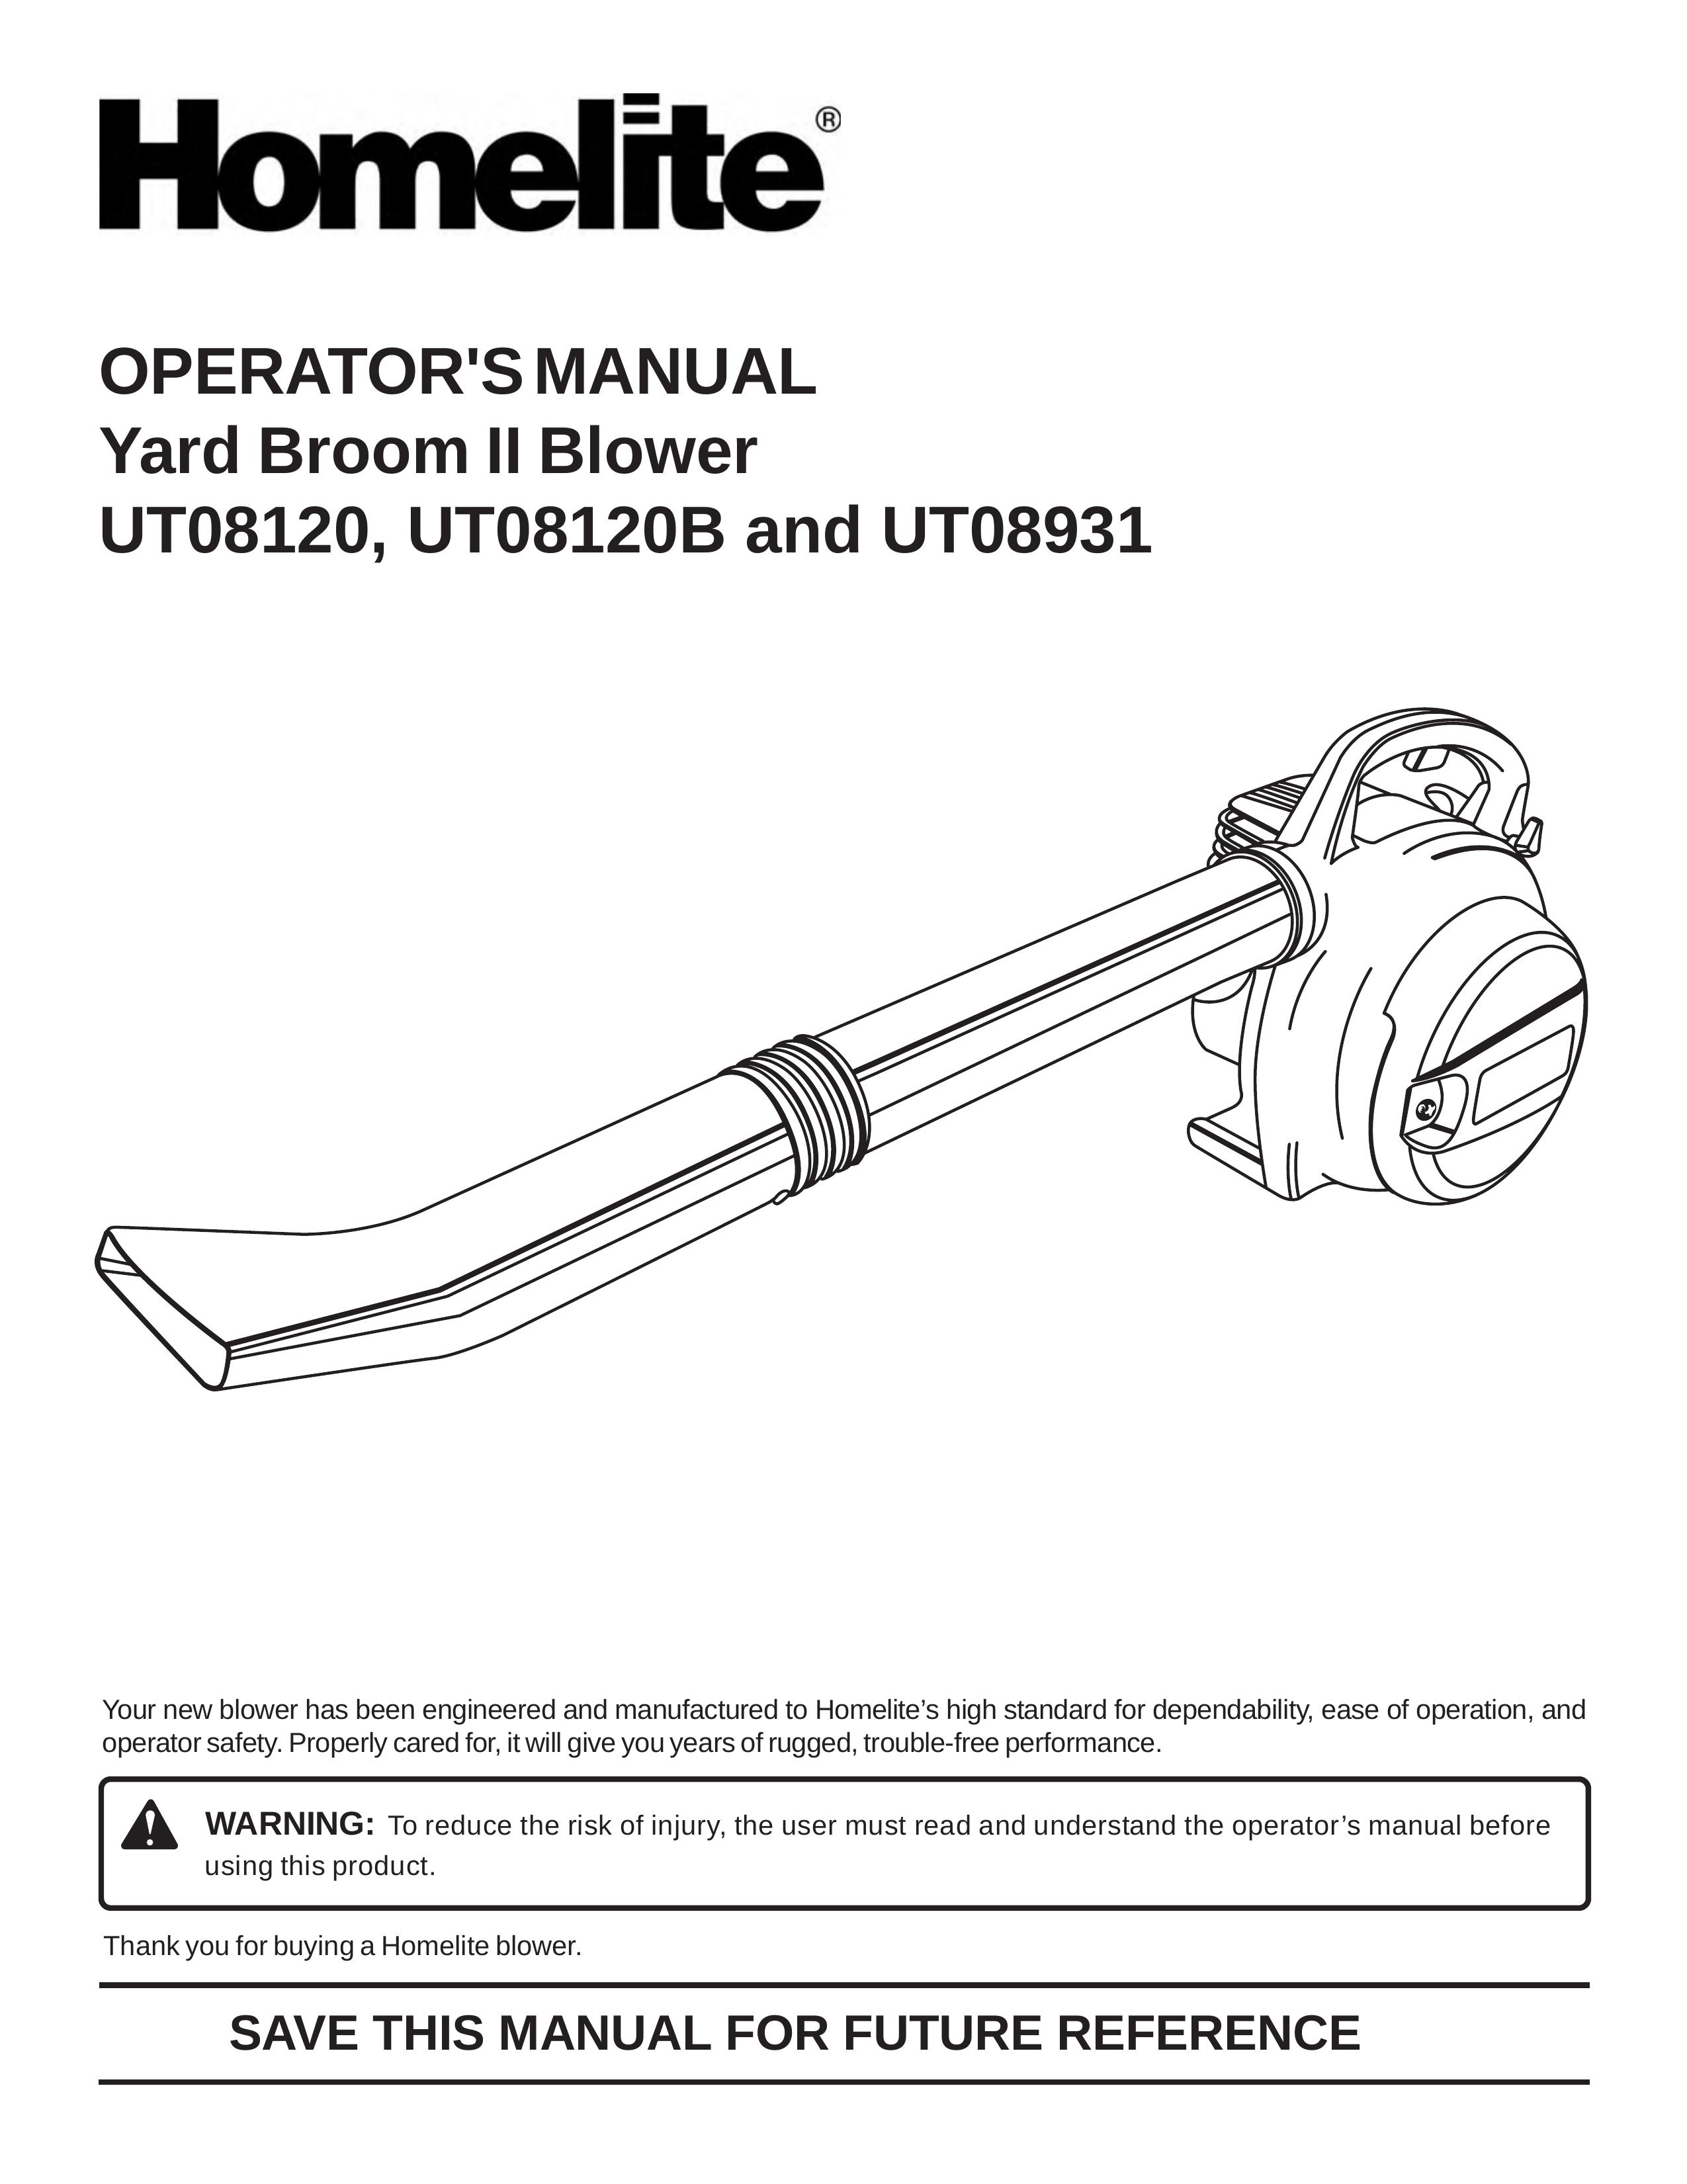 Homelite UT08120B, UT08931 Blower User Manual